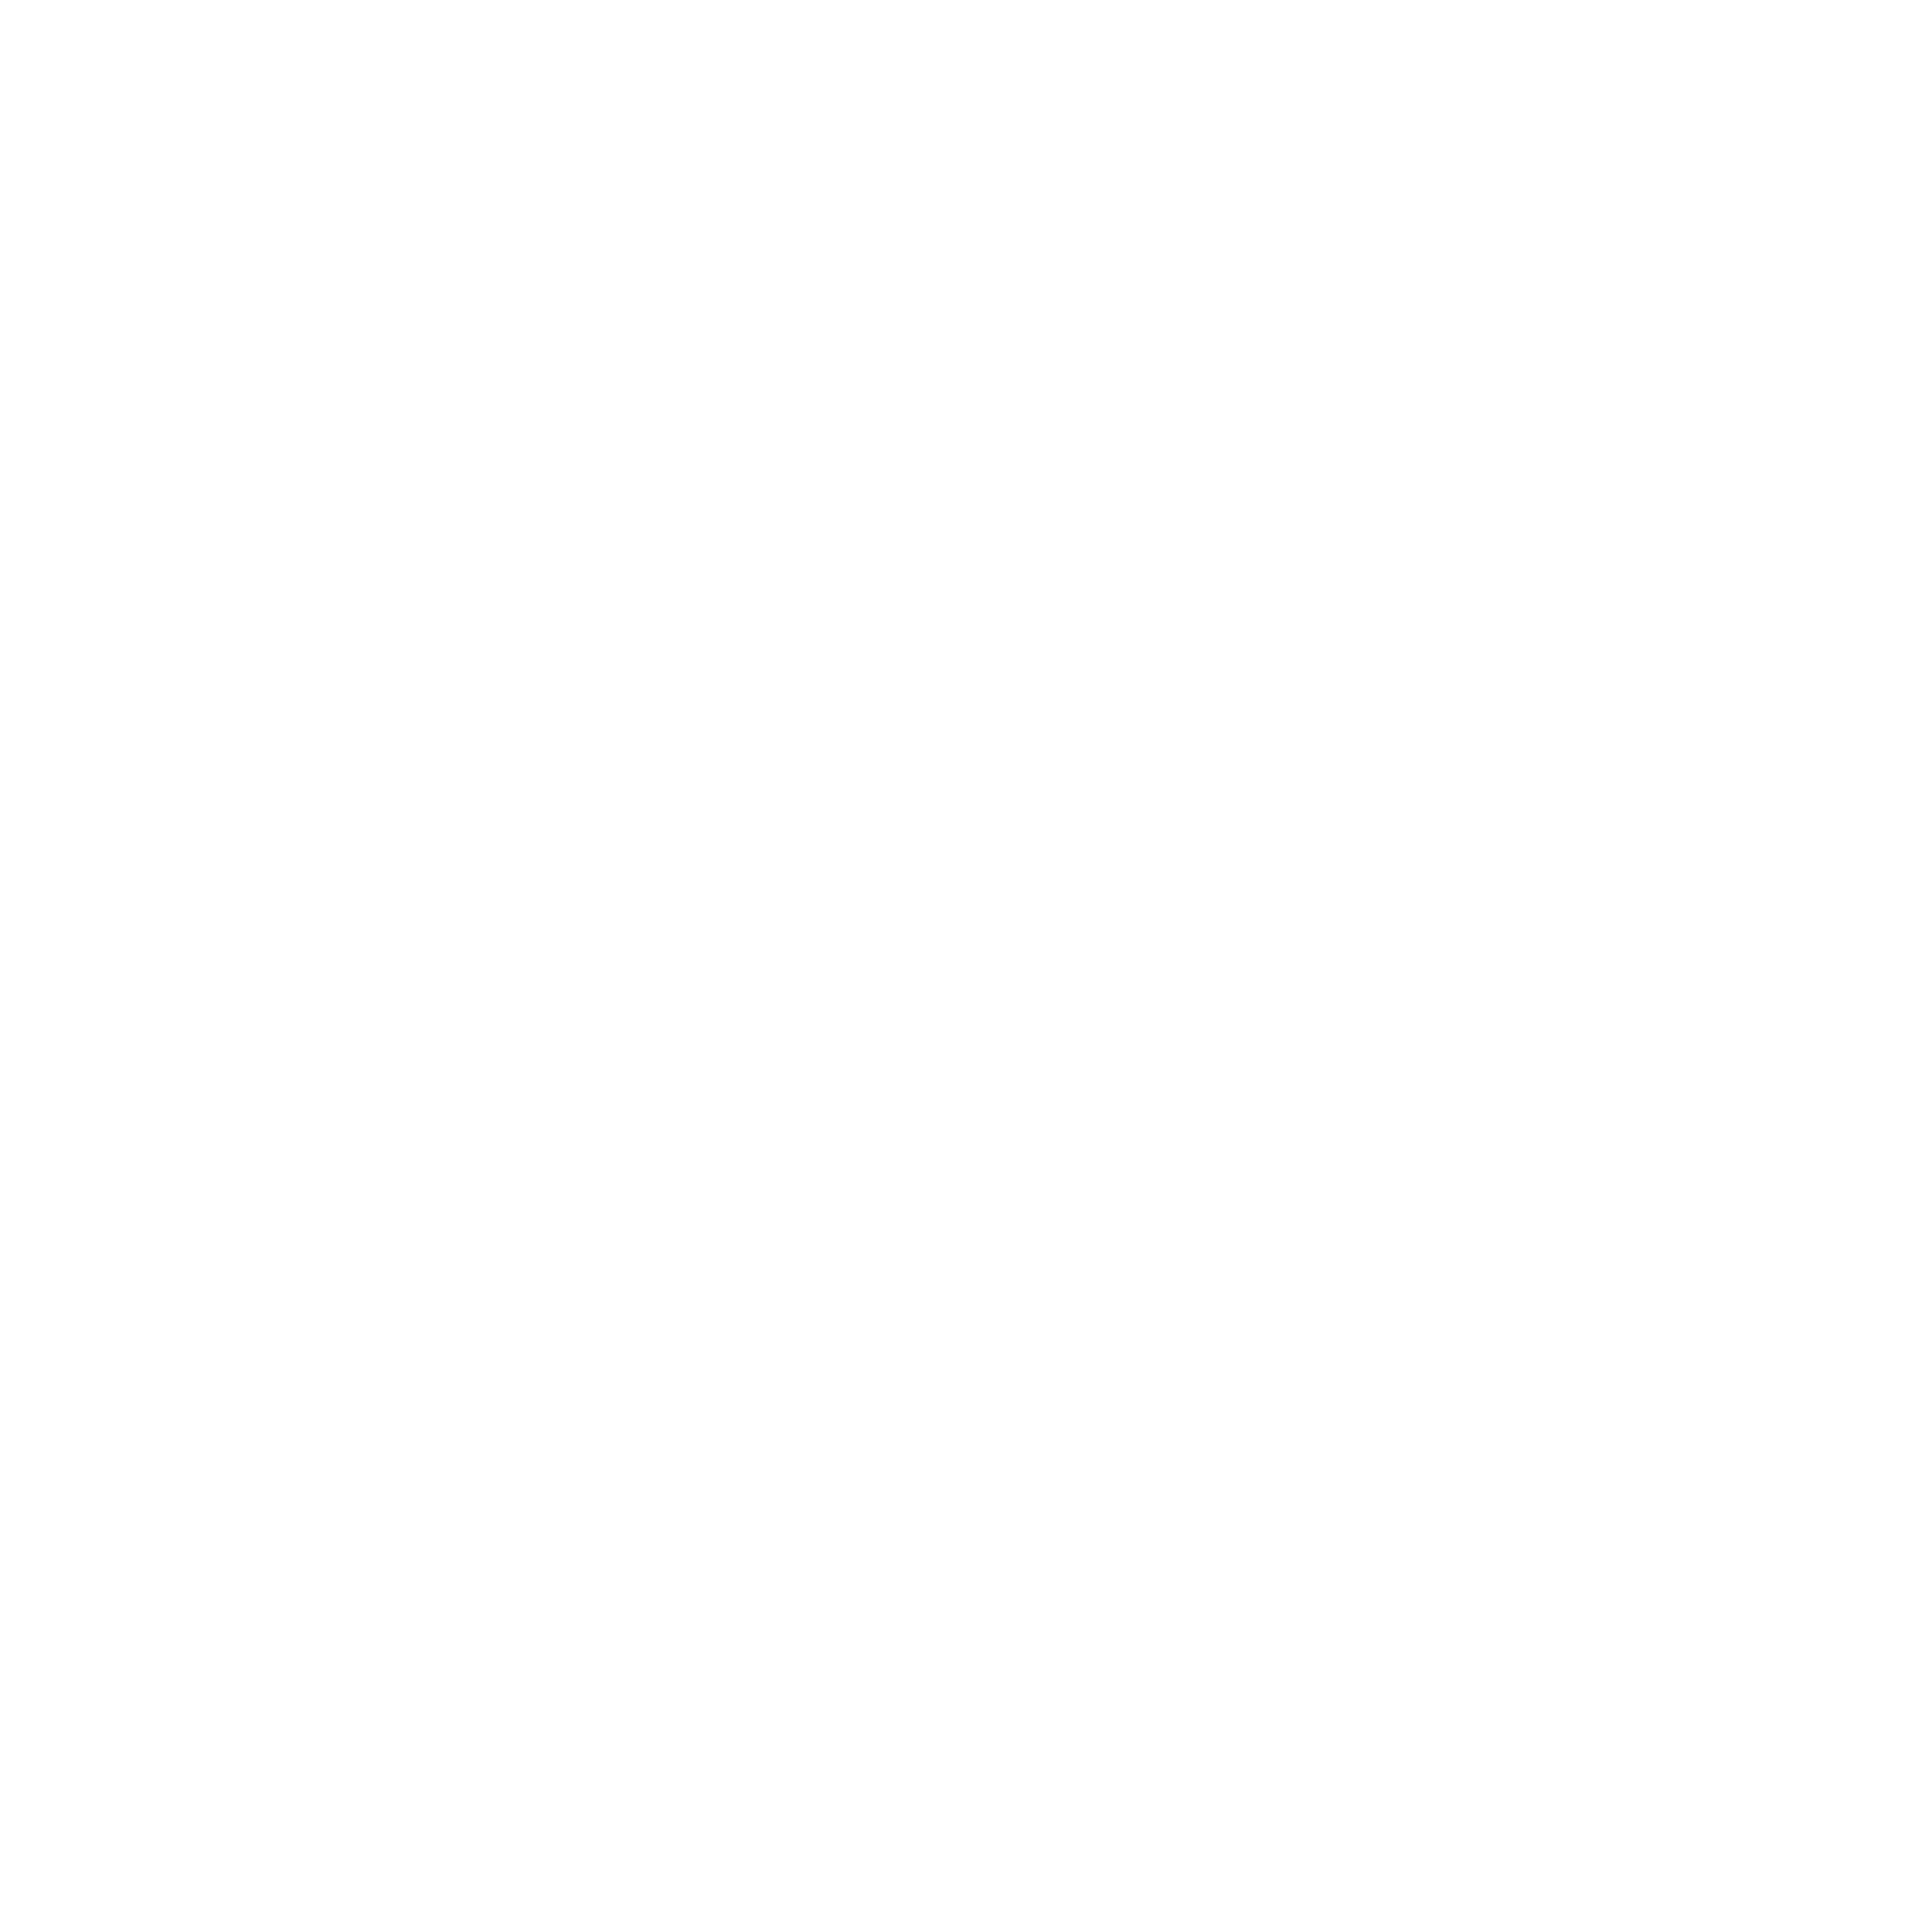 talentum-future-logo